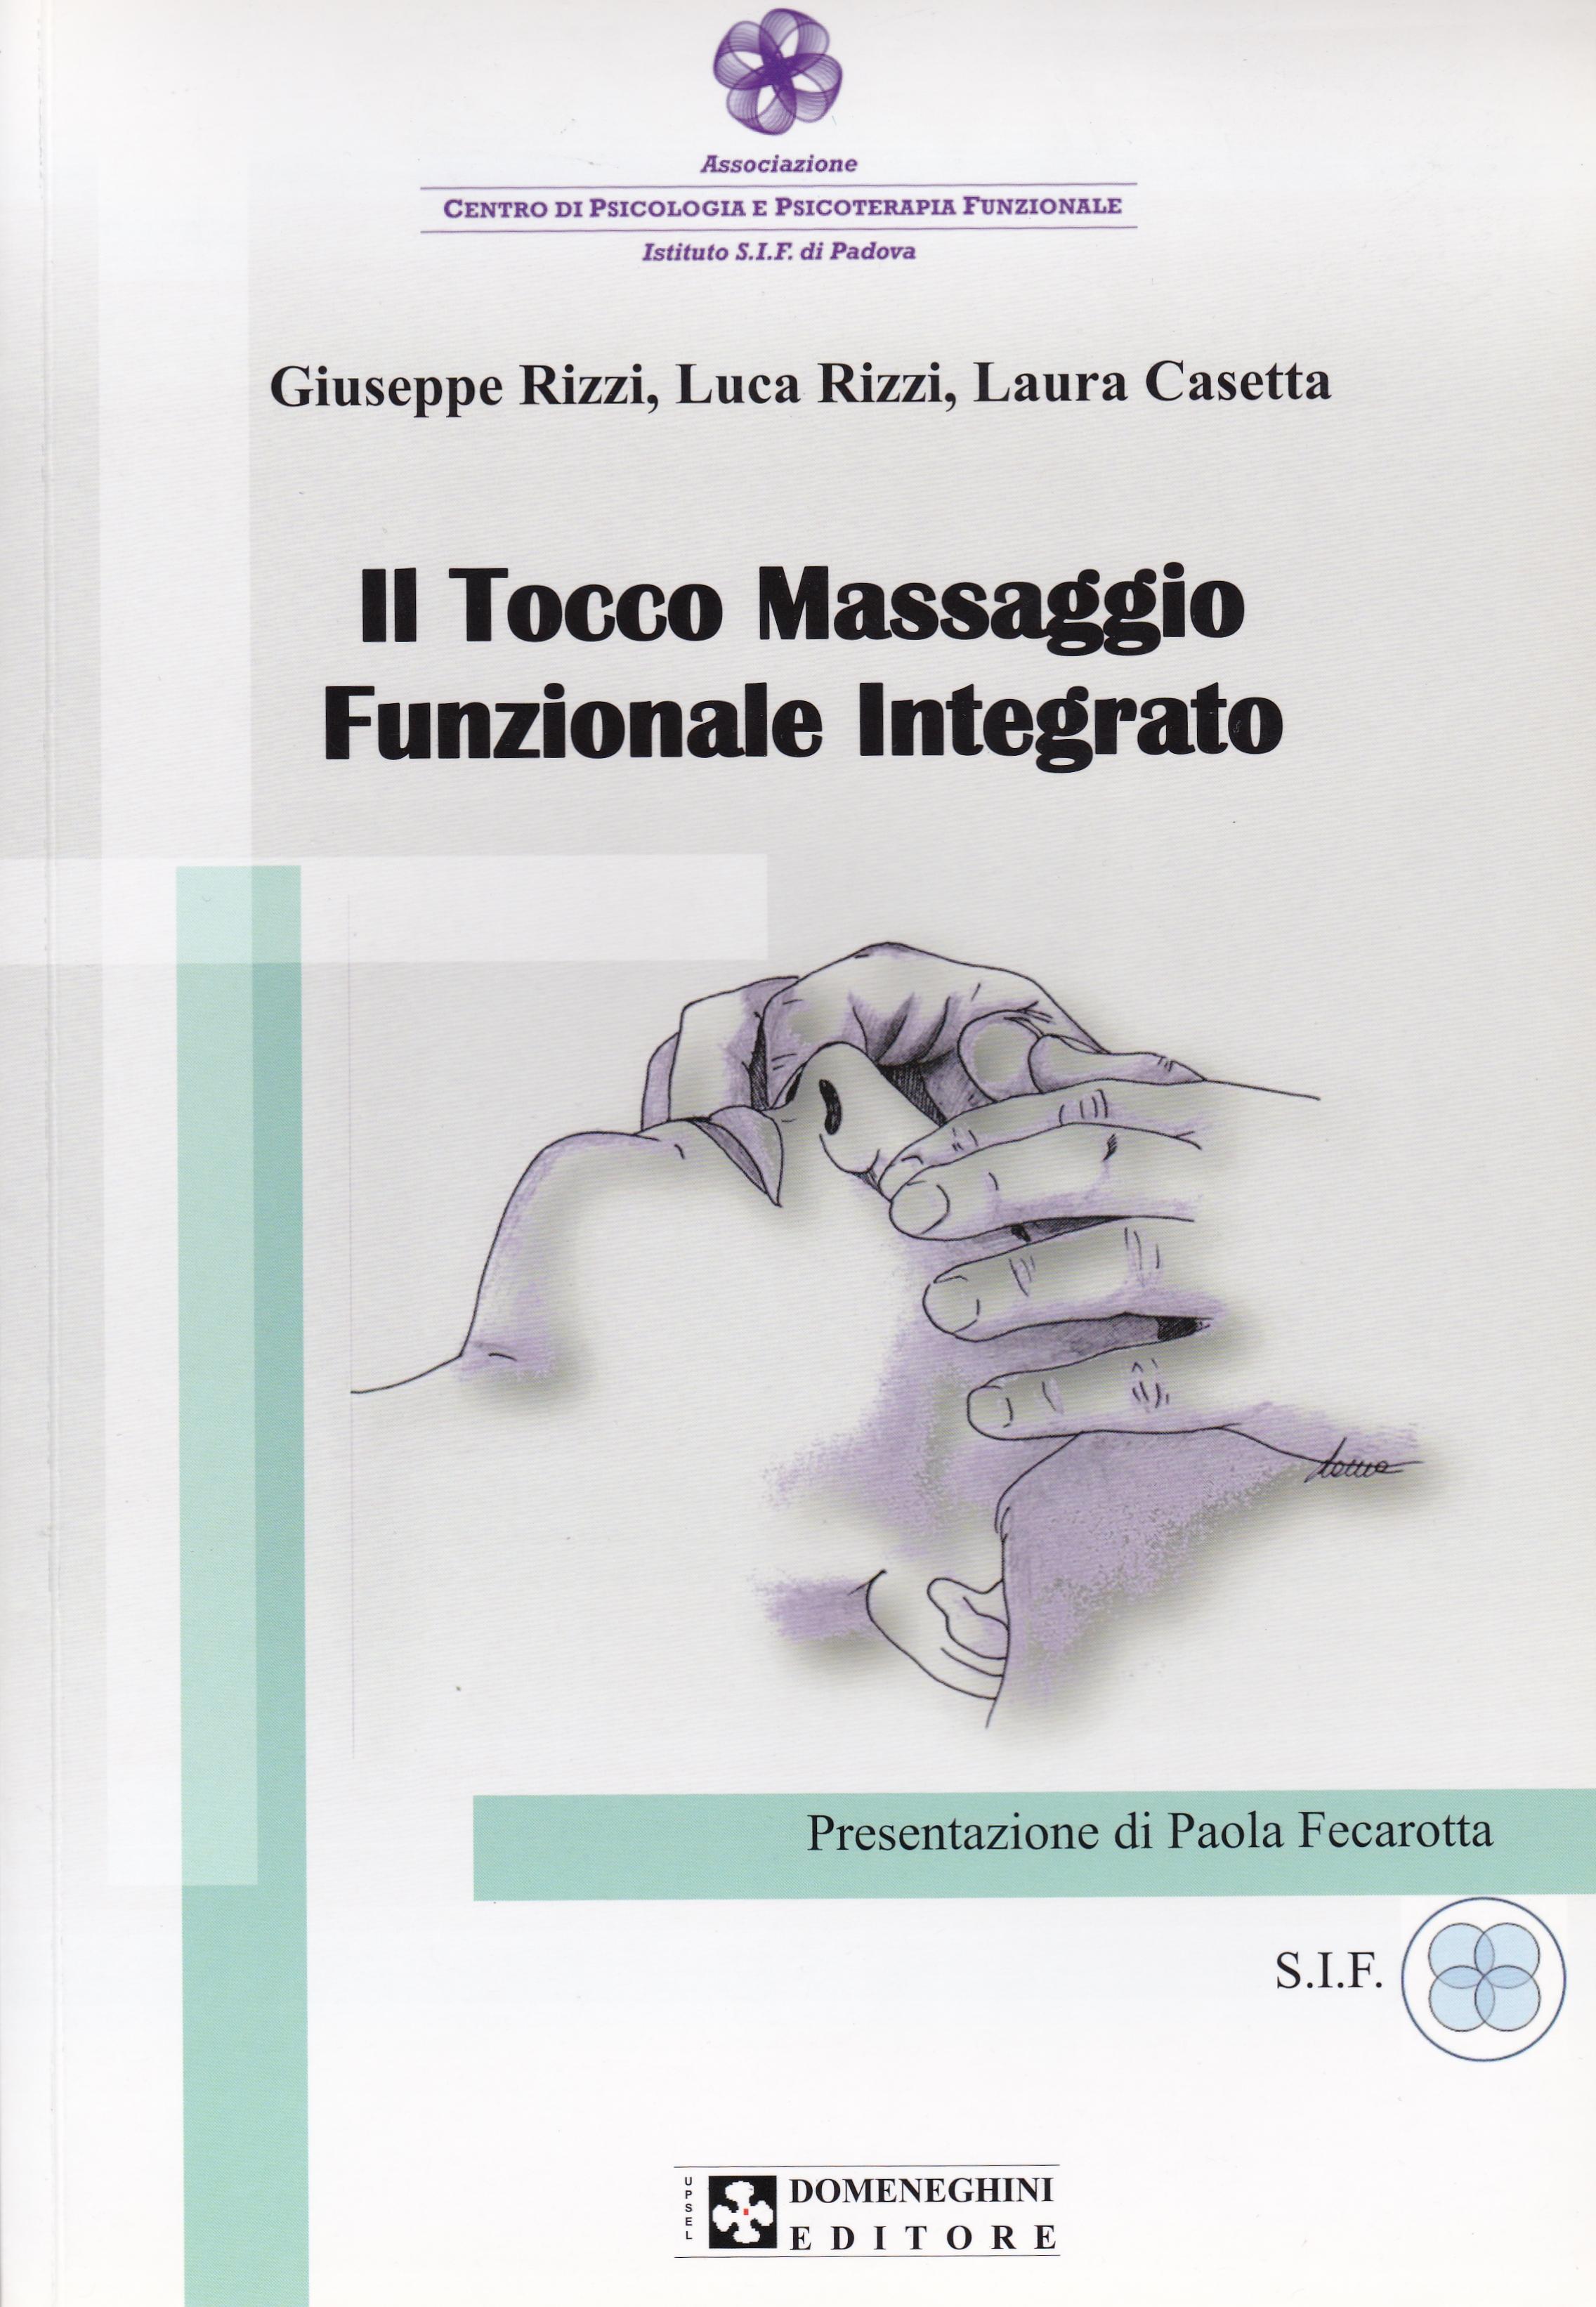 Rizzi Giuseppe - Rizzi Luca - Casetta Laura. Il Tocco. Massaggio Funzionale Integrato.